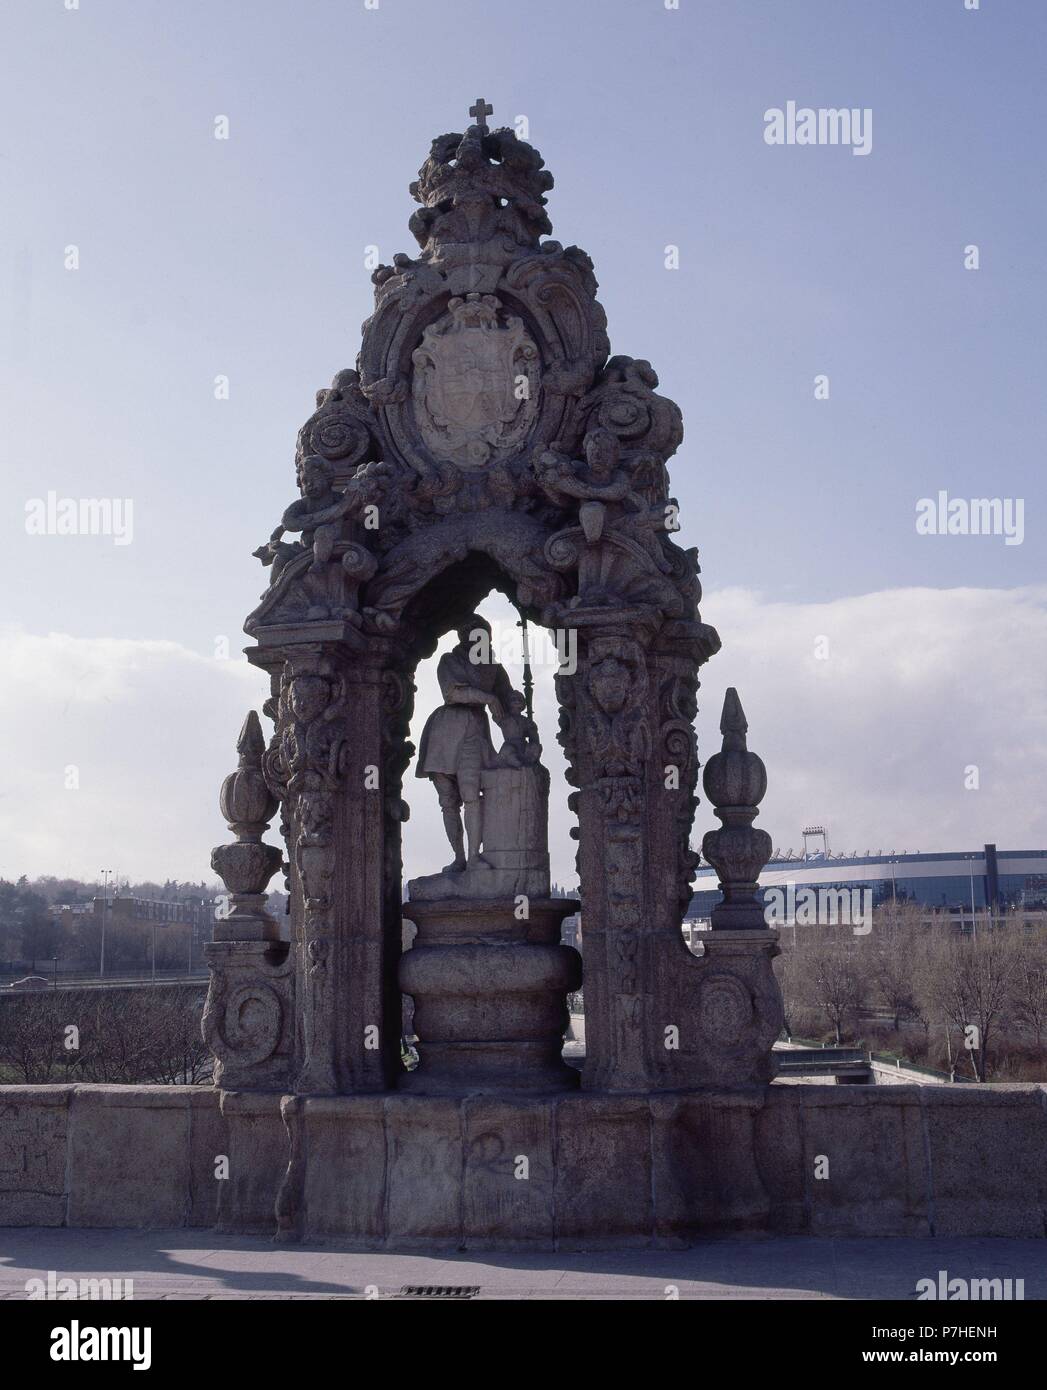 HORNACINA DEDICADA A SAN ISIDRO - S XVIII - JUAN RON AUTOR DE LA ESCULTURA. Autor: Pedro de Ribera (1683-1742). Ort: Puente de Toledo. Stockfoto